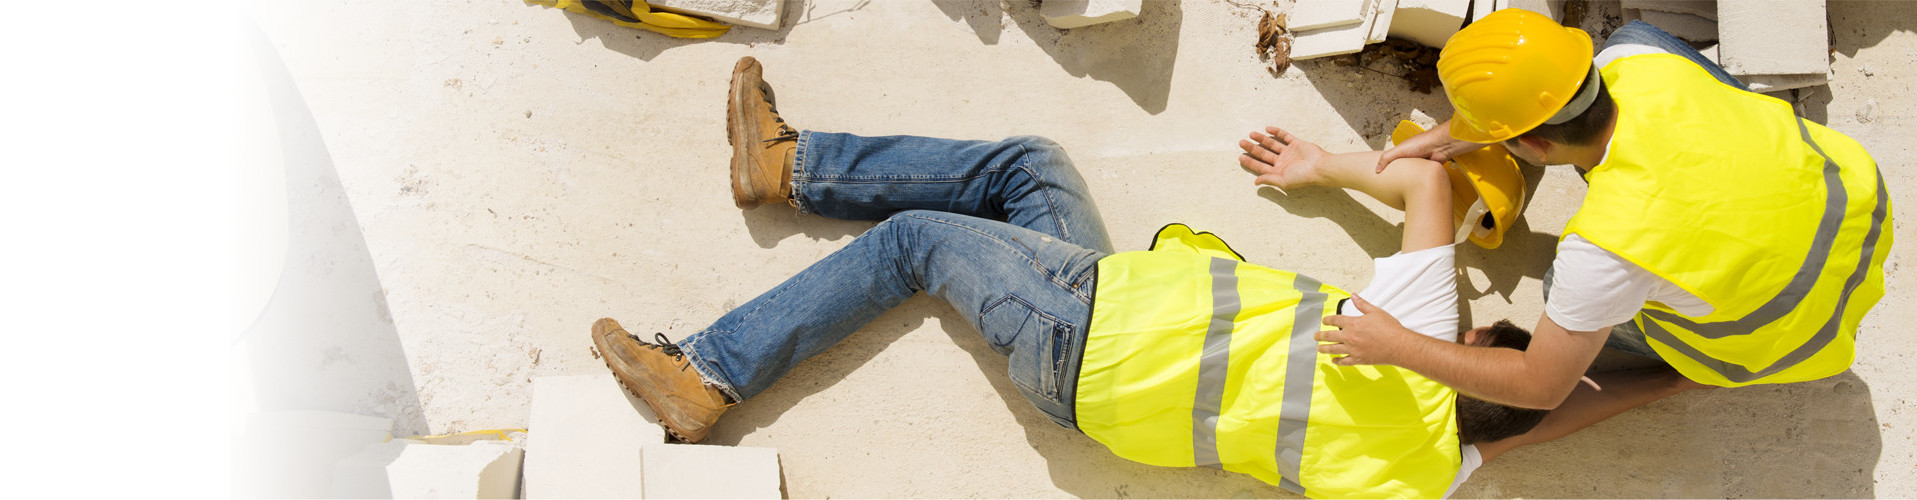 Ein Arbeiter auf der Baustelle beugt sich über einen zweiten Arbeiter, der am Boden liegt © Halfpoint, stock.adobe.com